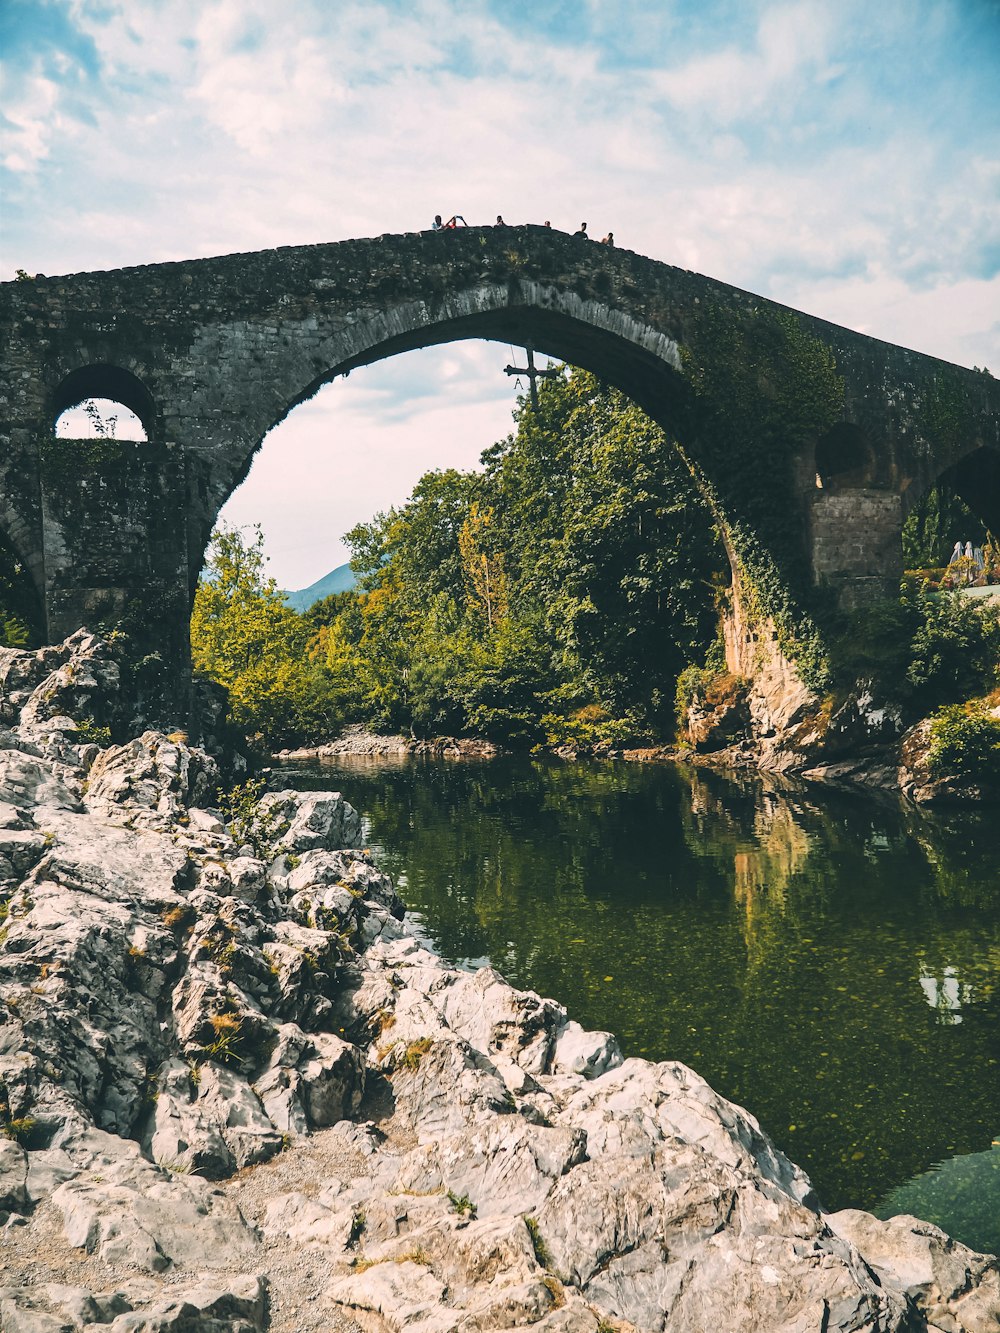 a stone bridge over a river